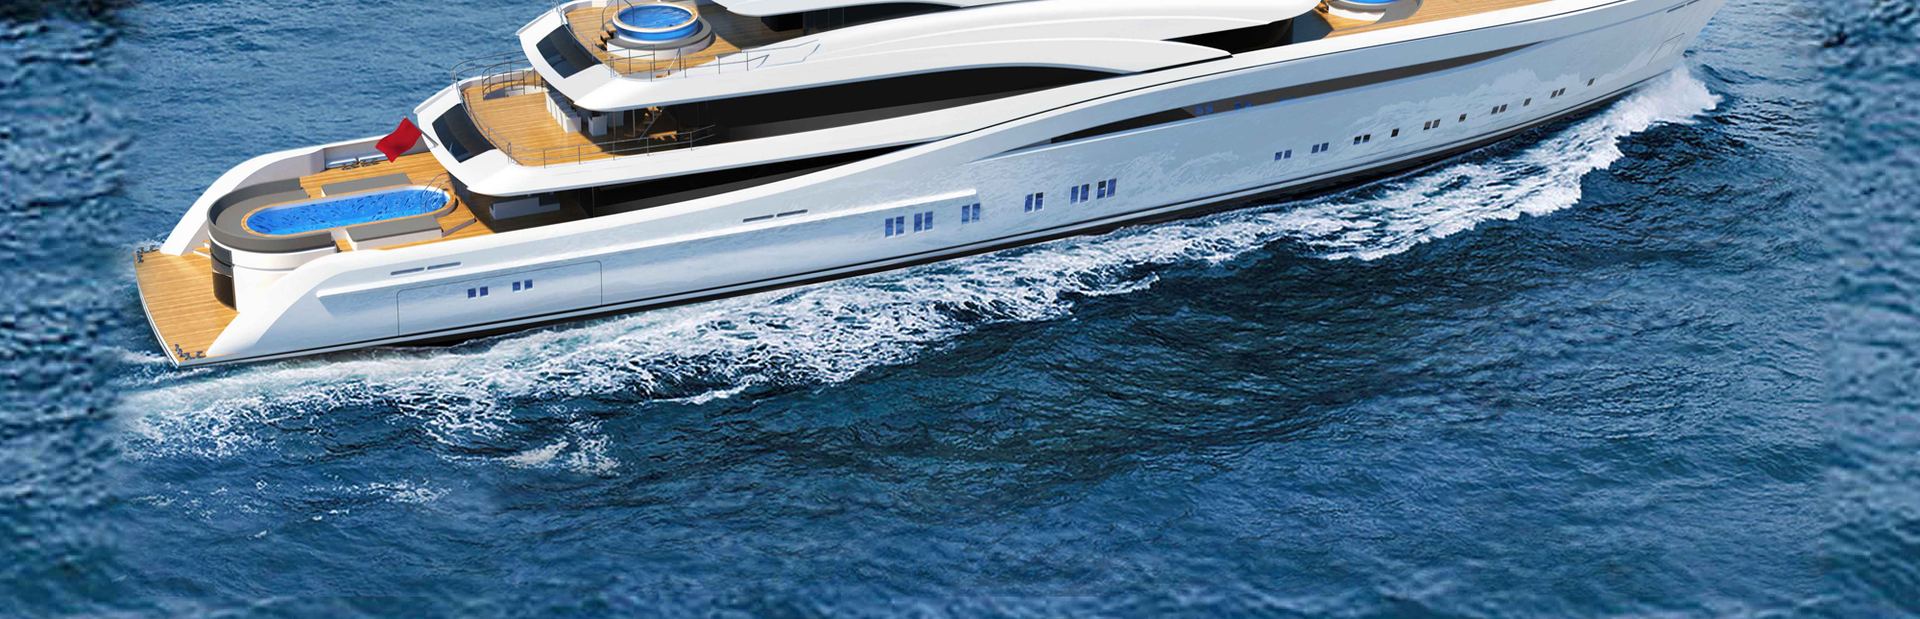 Turquoise Yachts Profile Photo